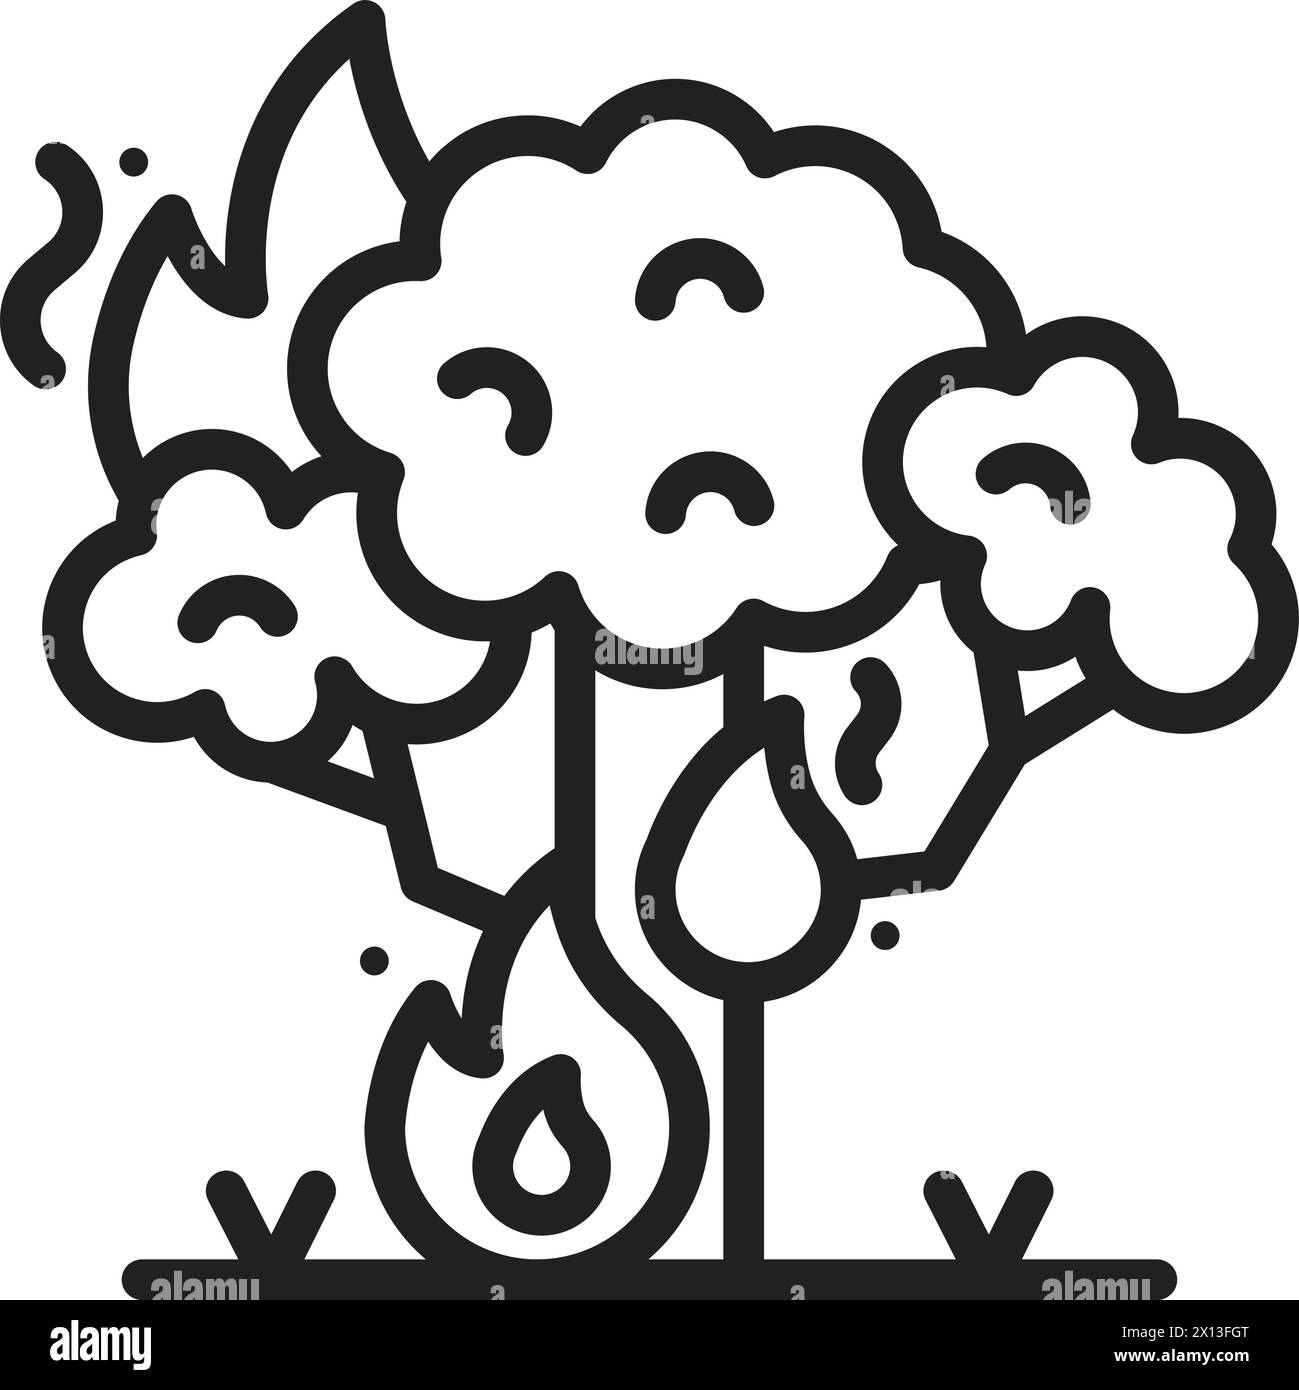 Immagine vettoriale dell'icona Wildfire. Illustrazione Vettoriale